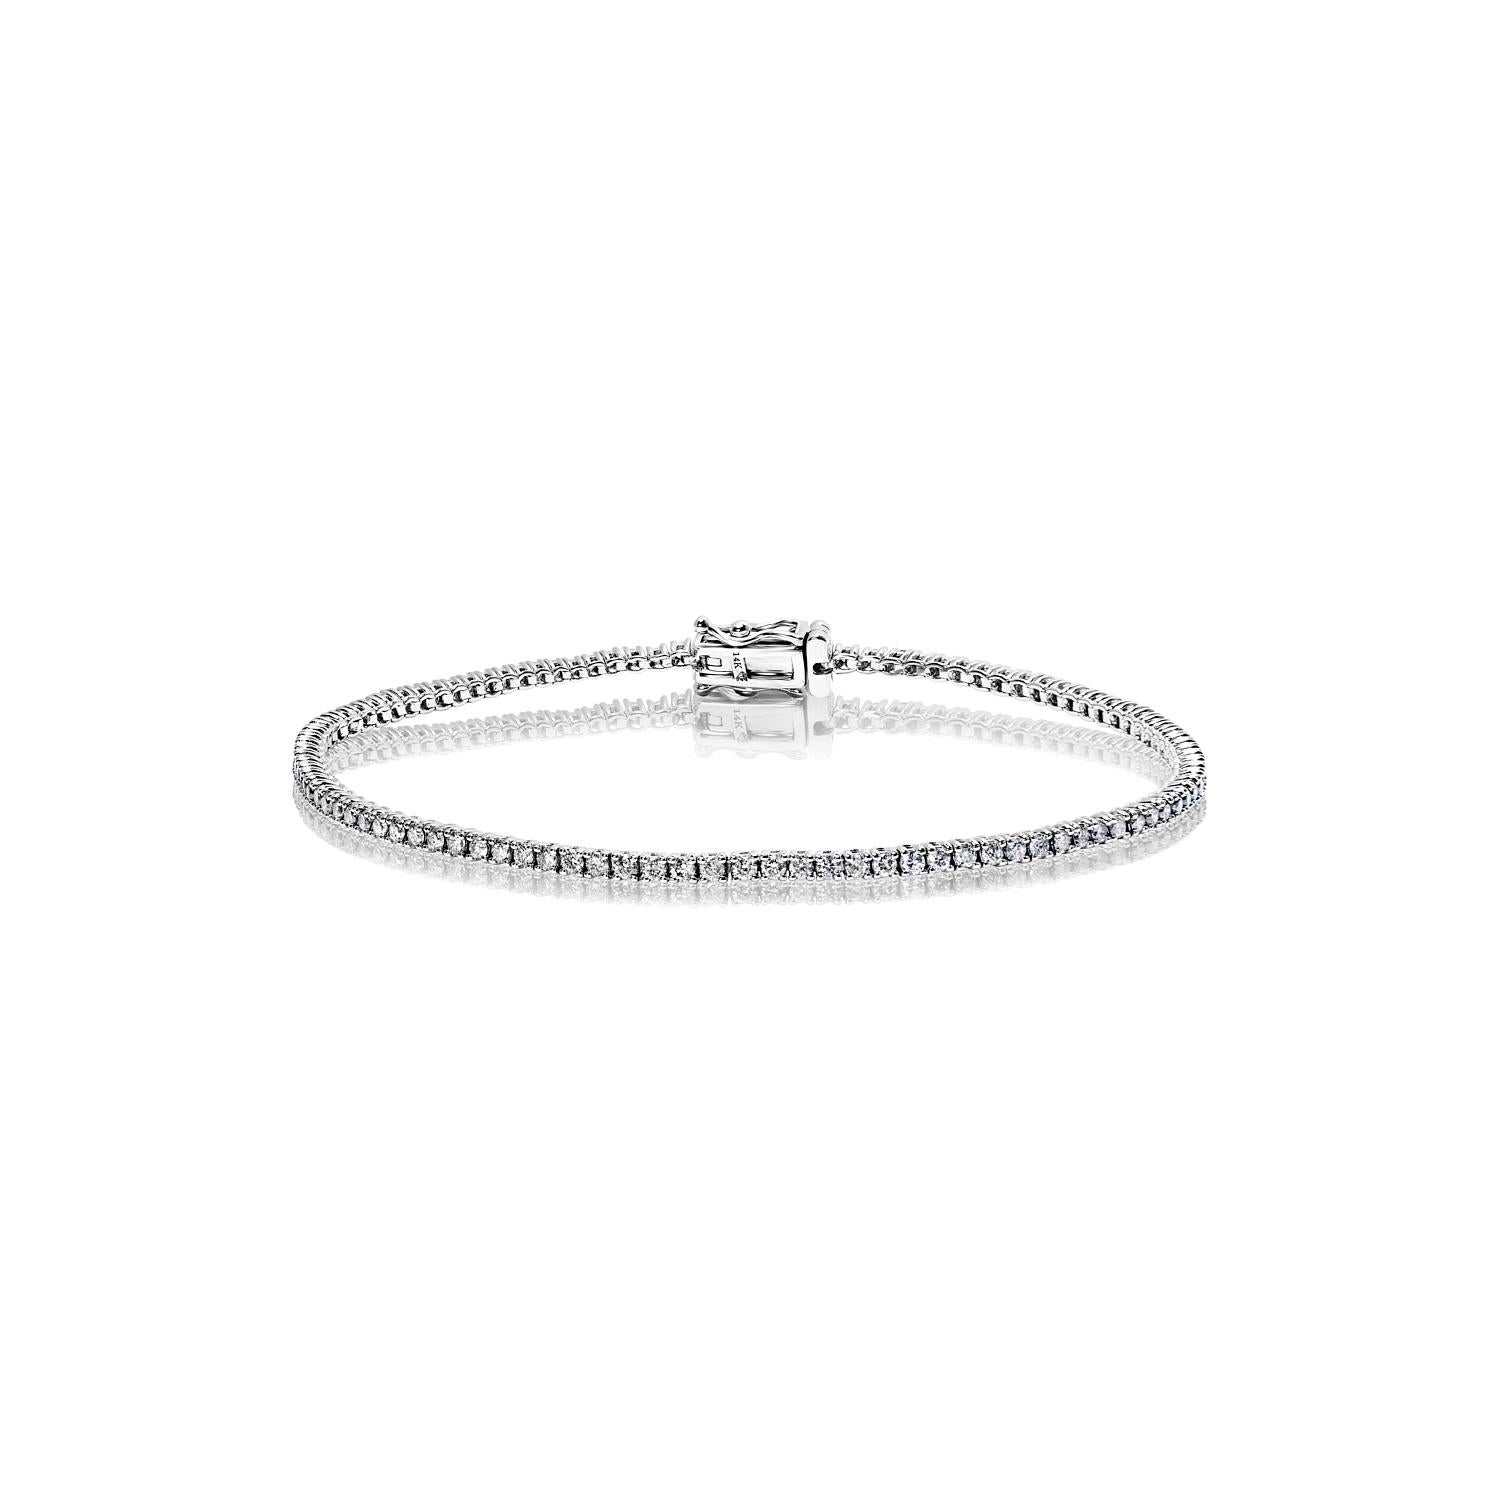 Le bracelet tennis IVANNA 2 Carat Single Diamond présente des DIAMONDS ronds taillés en brillant pesant au total environ 2 carats, sertis dans de l'or blanc 14 carats.

Le style :
Diamants
Taille du diamant : 2,00 carats
Forme du diamant : Taille